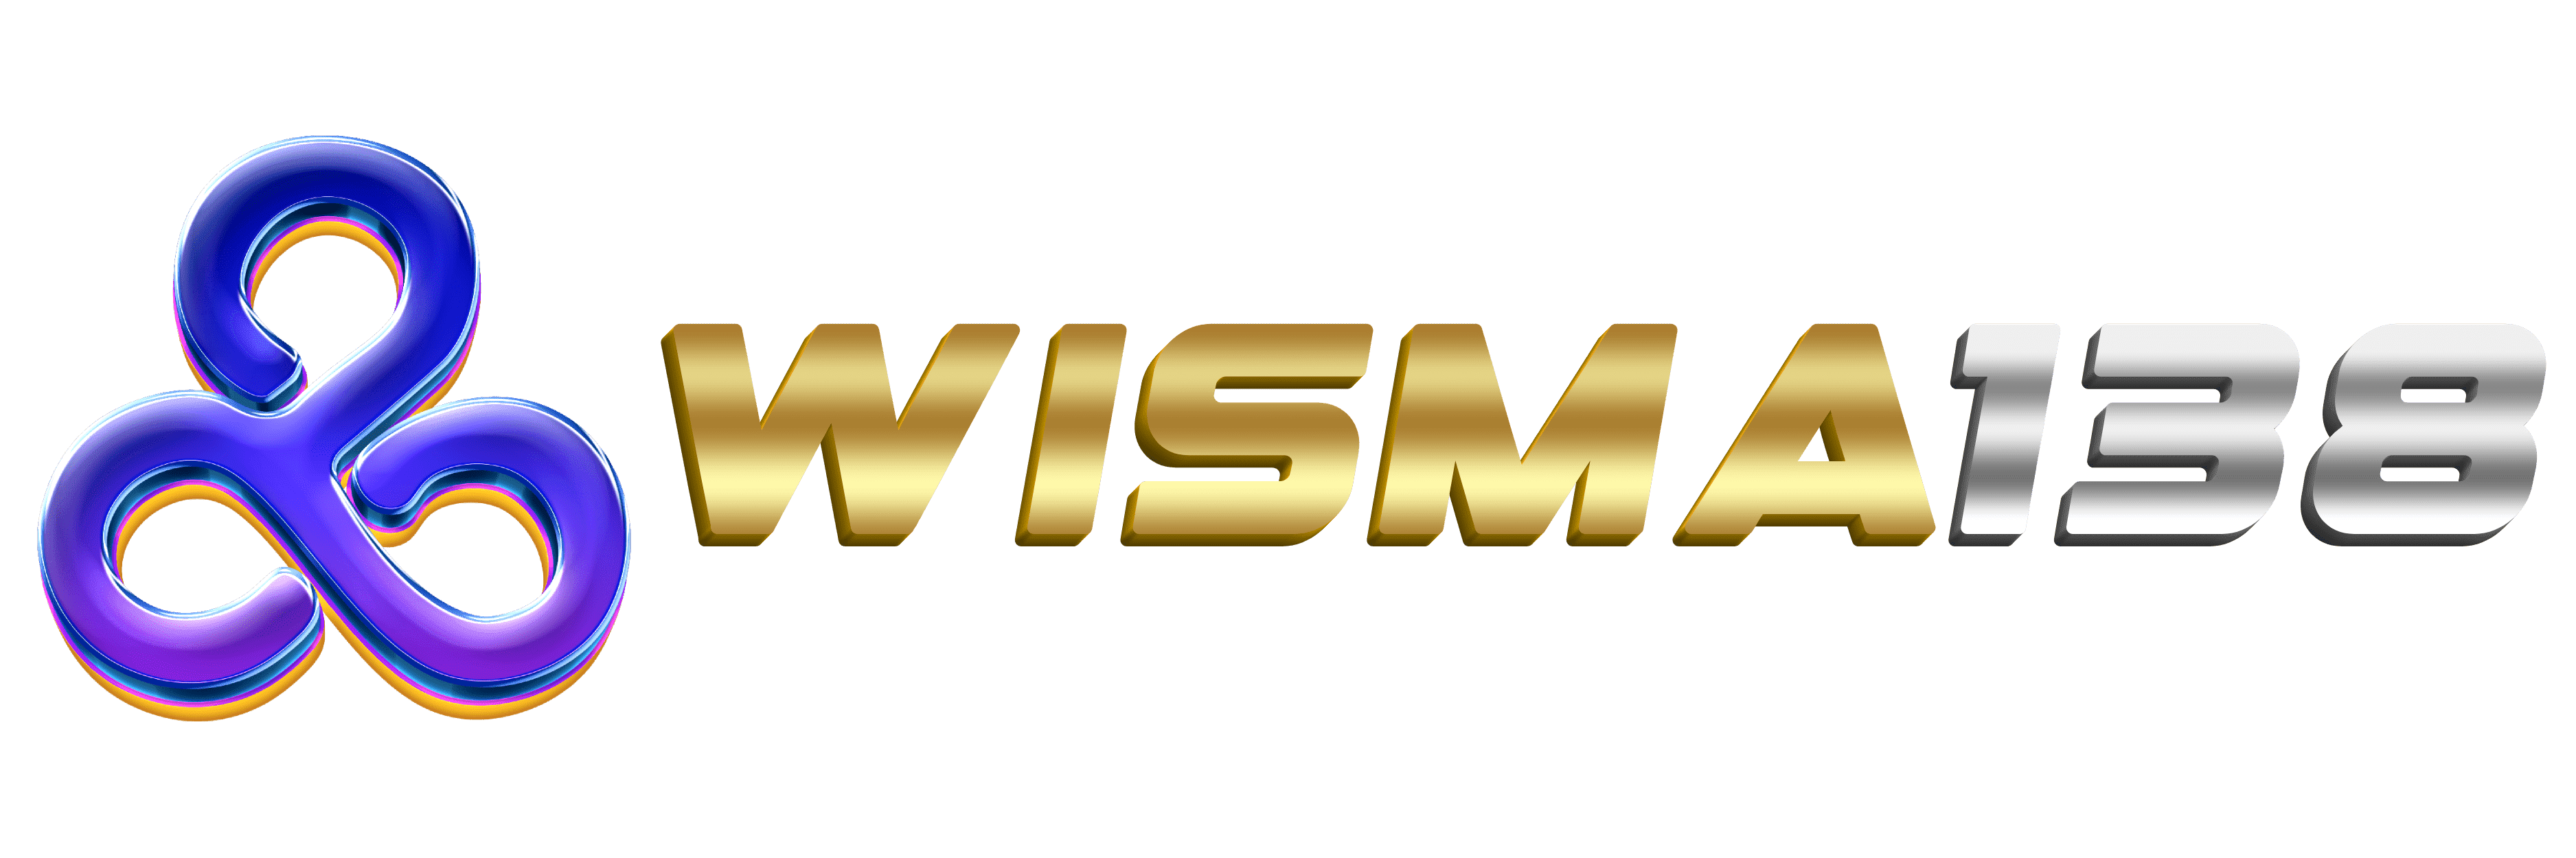 Wisma138